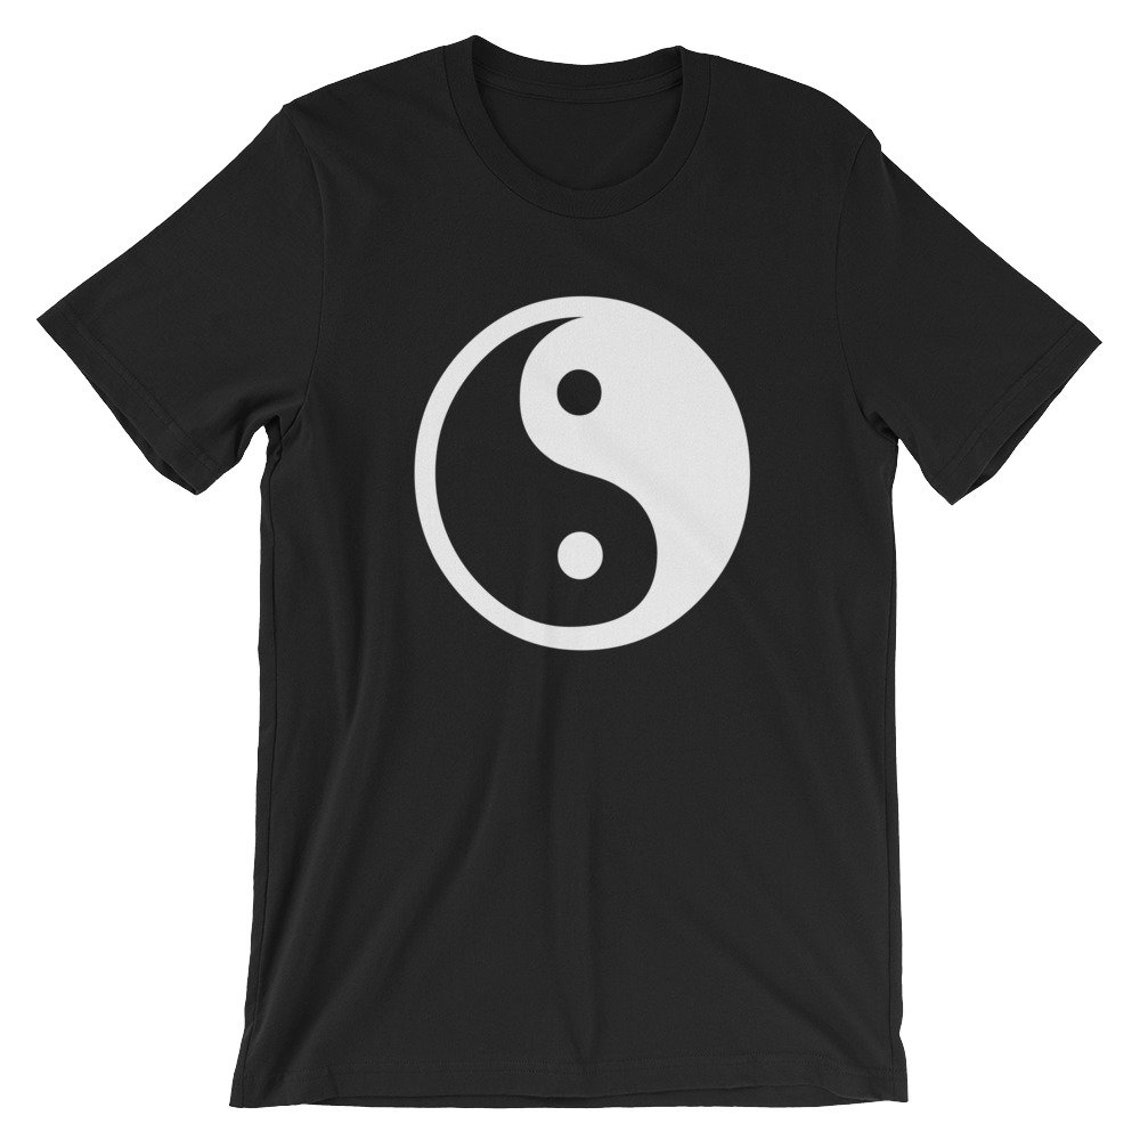 Yin-Yang TShirt/Graphic Tee/Hipster Tshirt/Unisex | Etsy